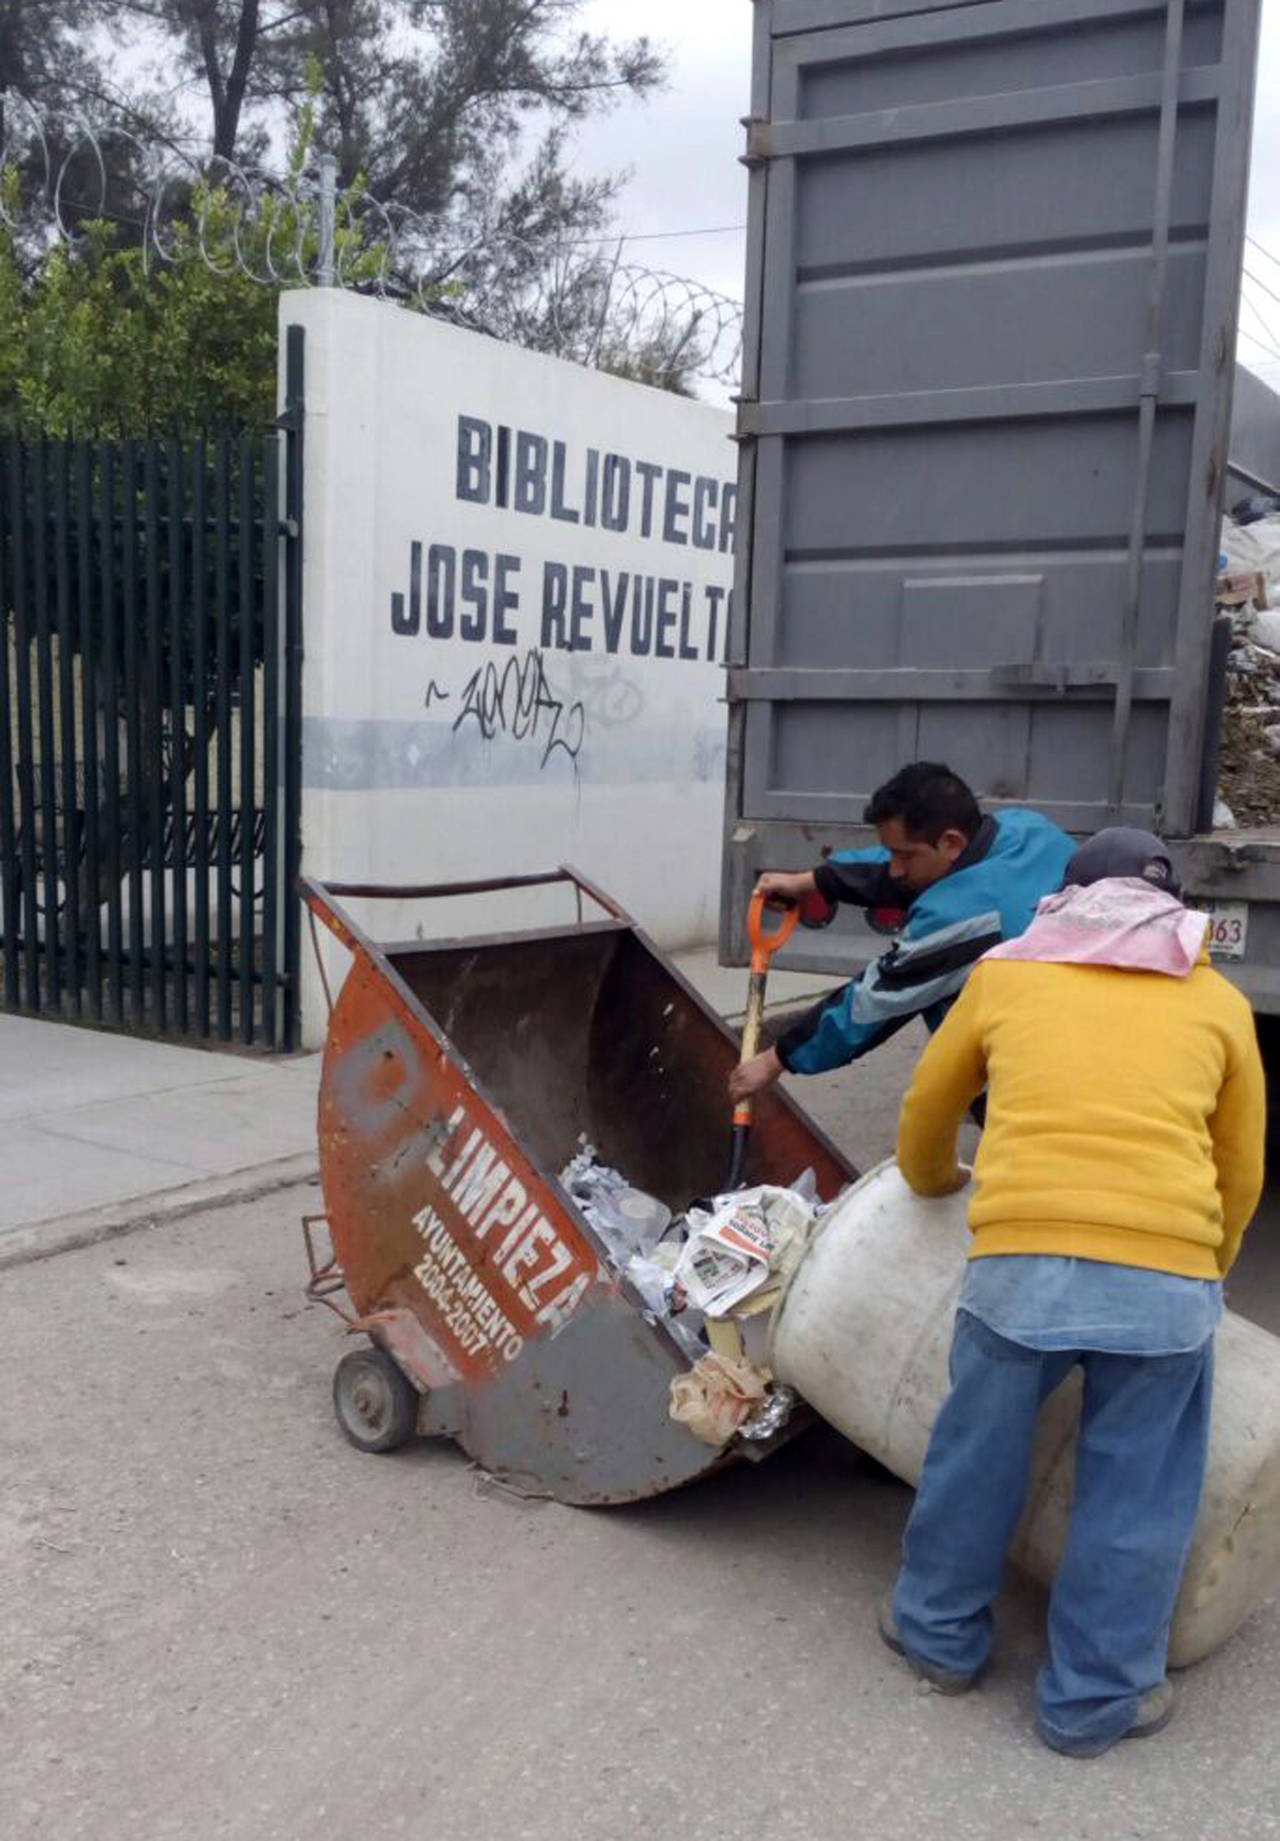 Limpieza. A fin de mantener la ciudad limpia, intensifican recorridos para recolectar la basura. (CORTESÍA)